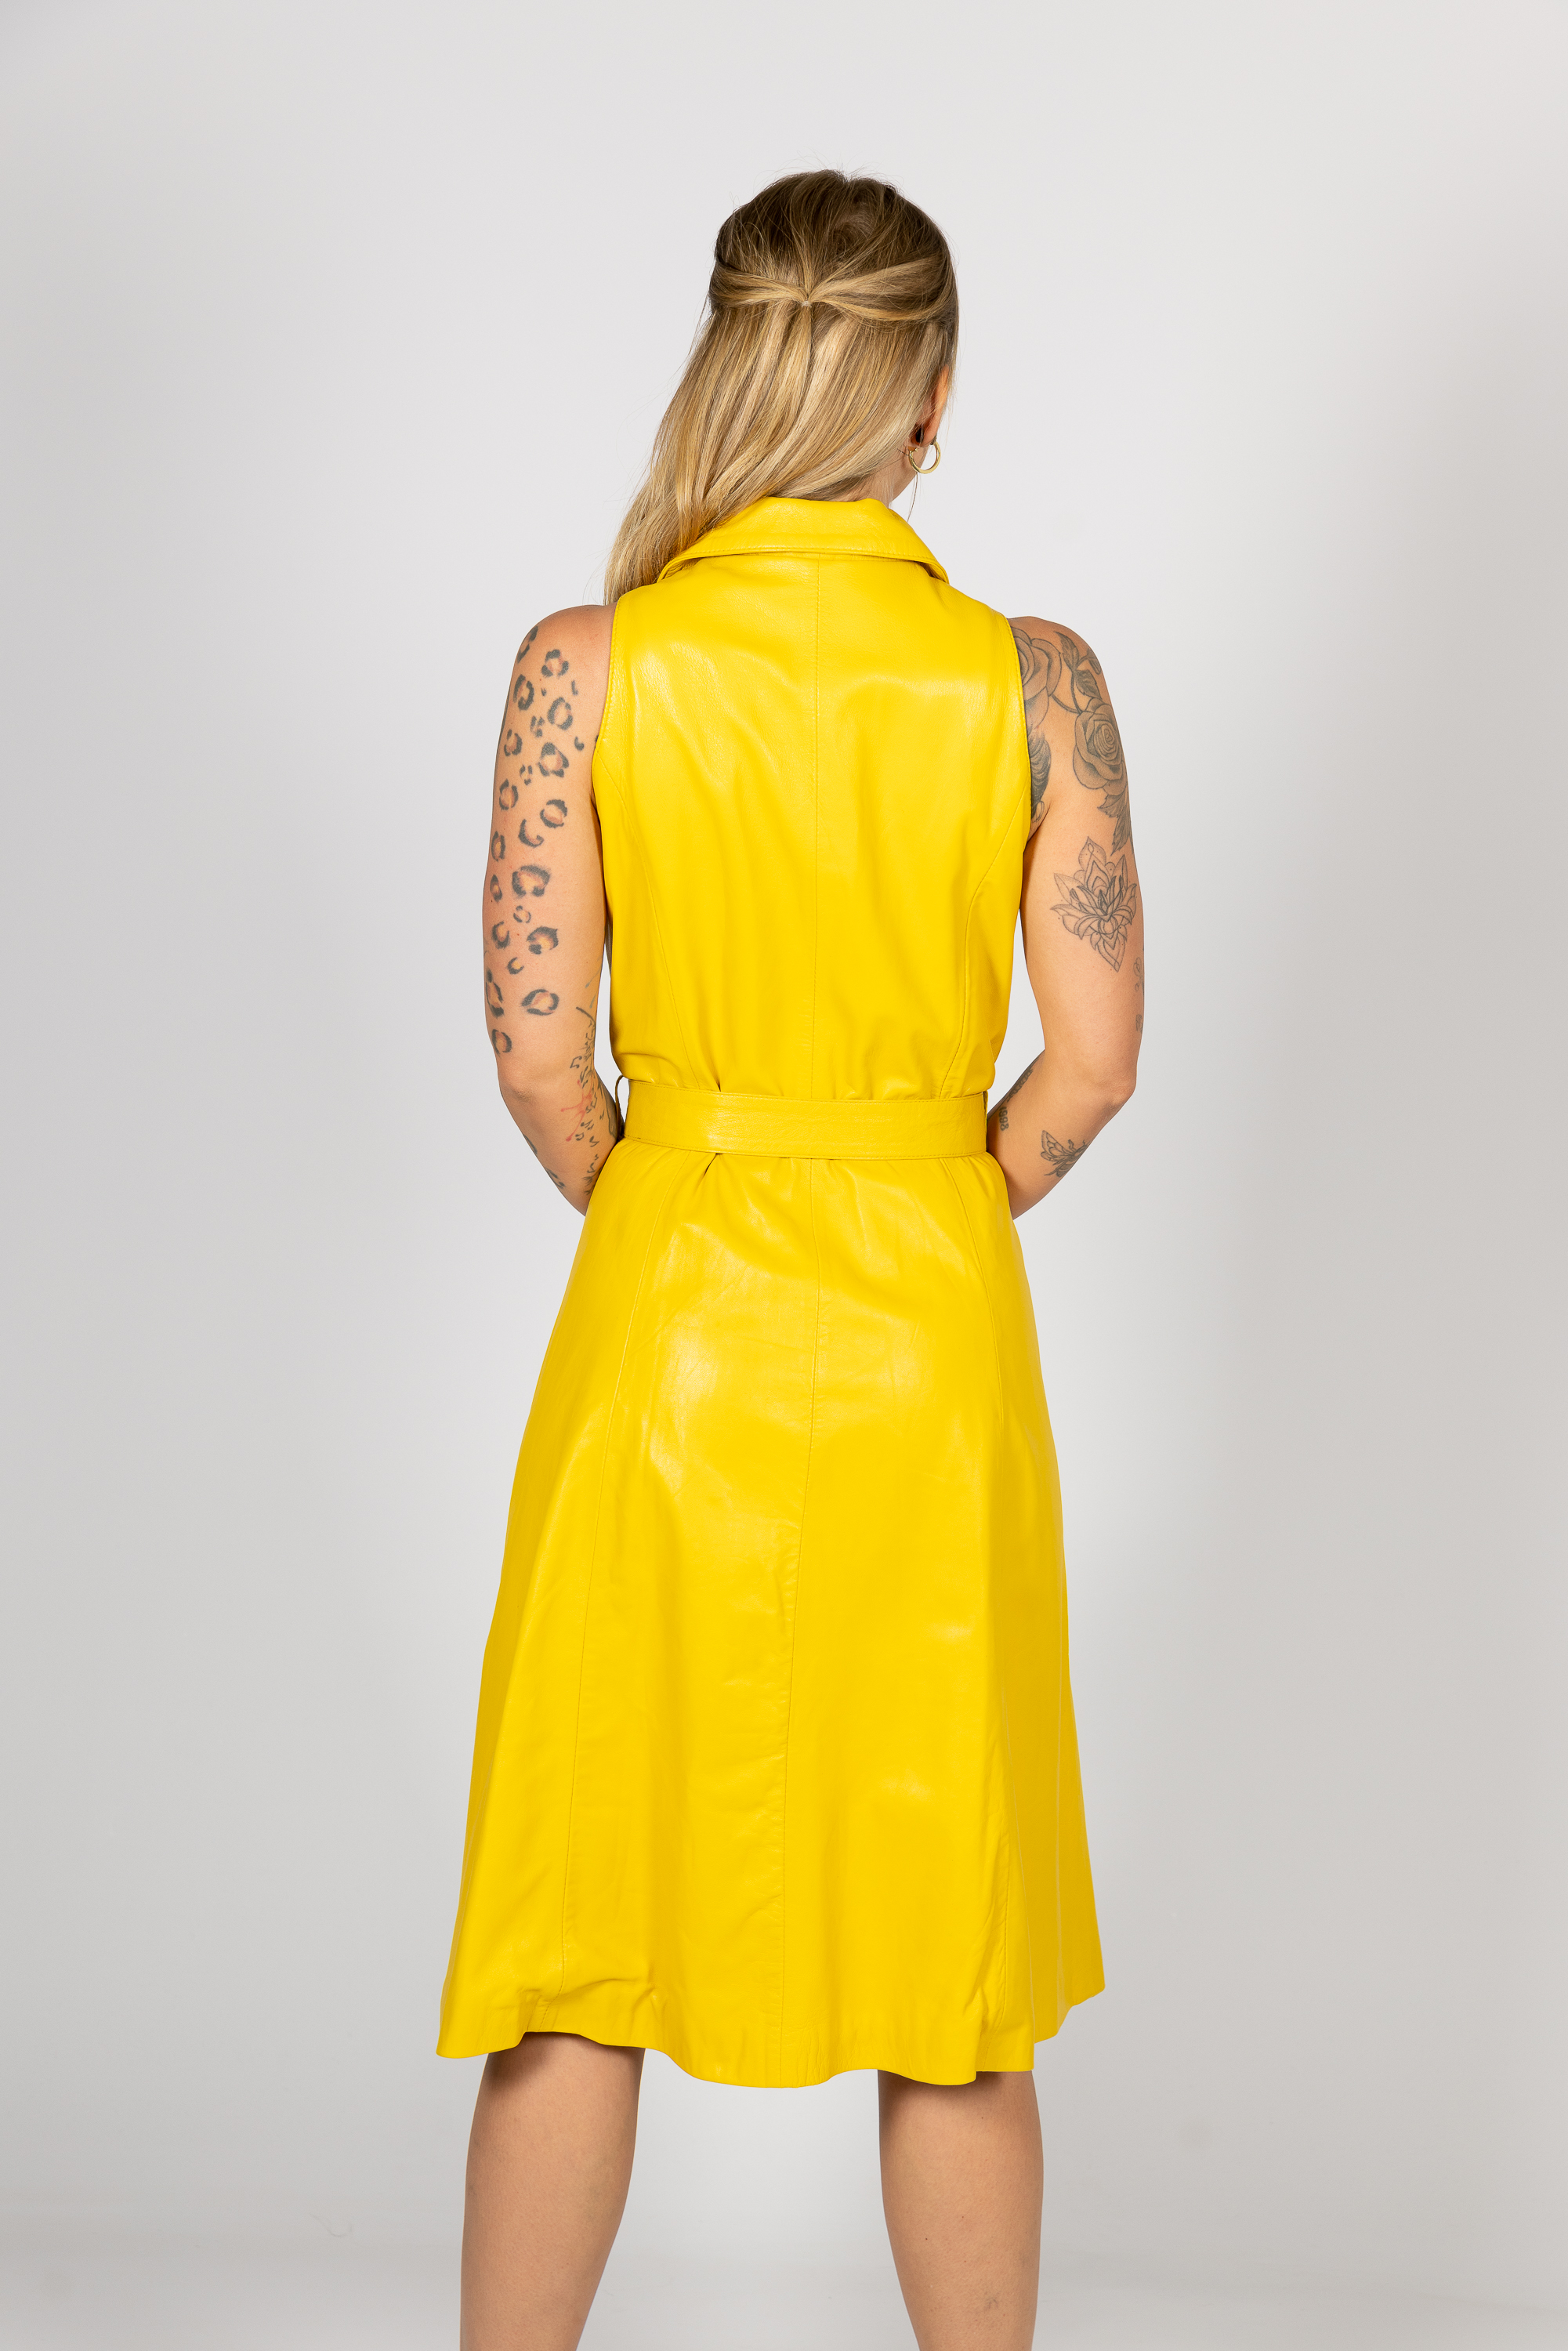 Leren jurk als wikkeljurk van zacht ECHT LER in geel